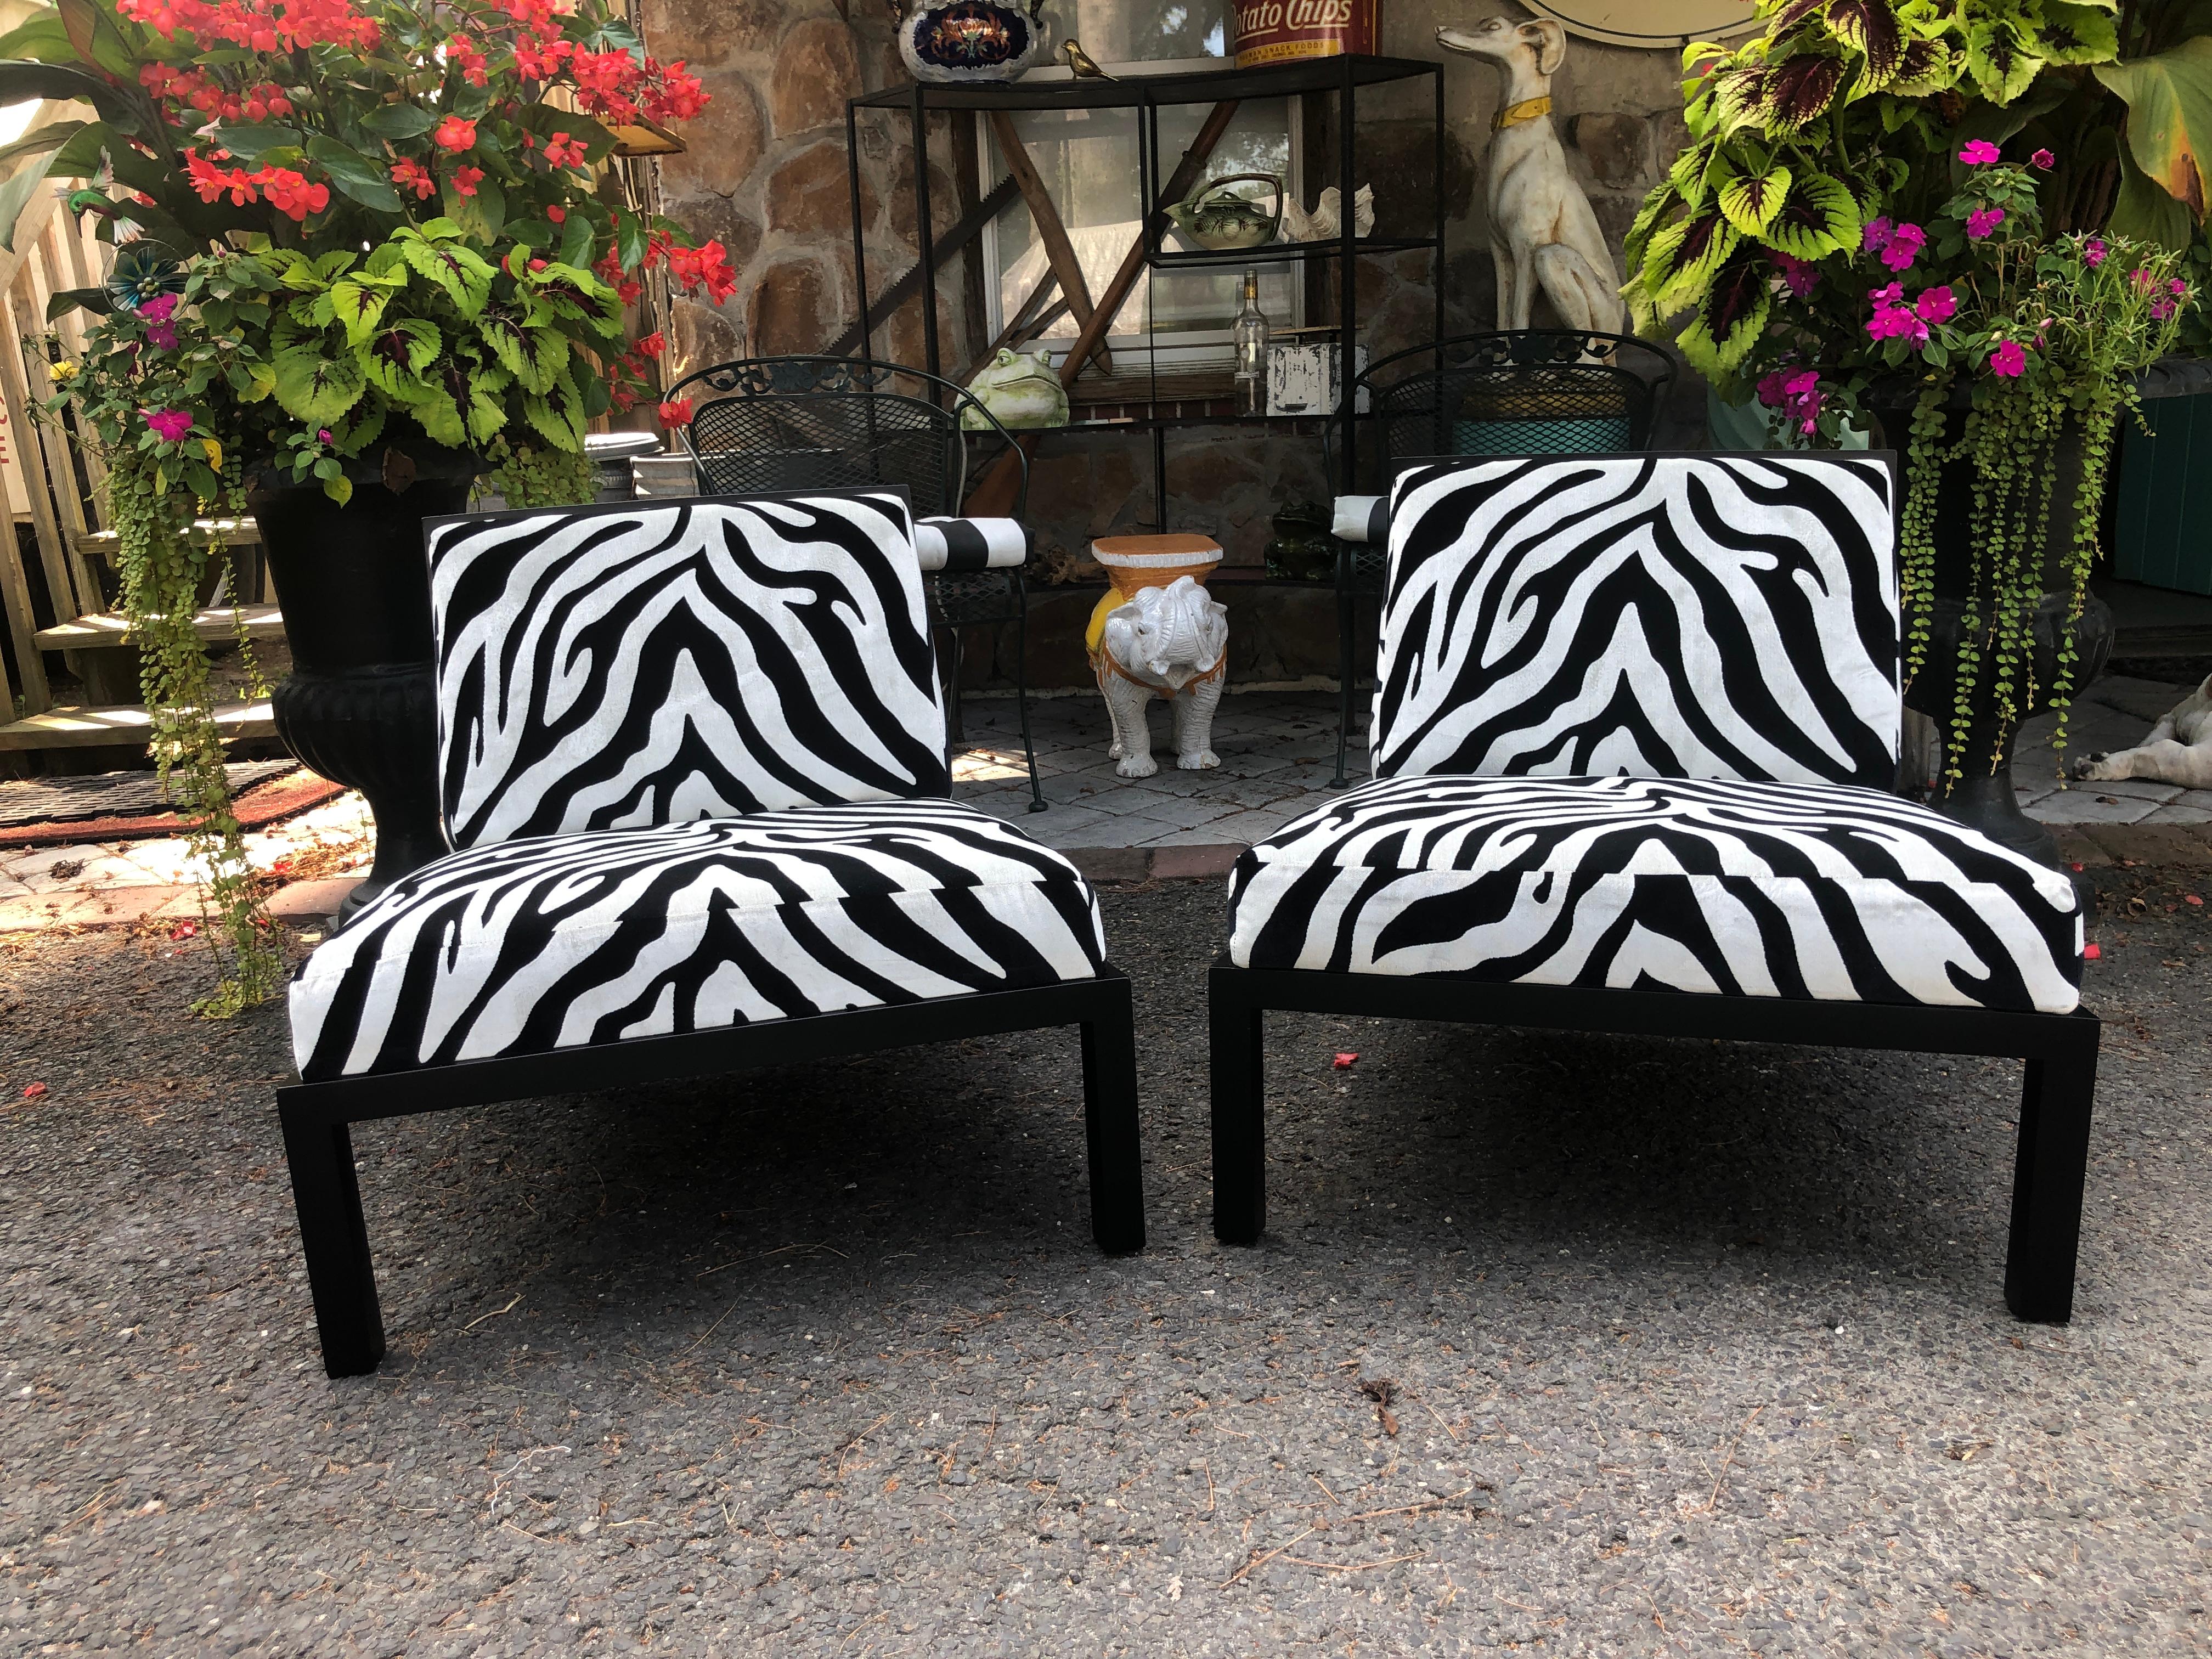 Atemberaubendes Paar schwarz lackierter Michael Taylor Pantoffelstühle von Baker. Diese schönen Stühle wurden sorgfältig restauriert und in einen neuwertigen Zustand versetzt - siehe Fotos. Die Rahmen wurden neu lackiert und die Polsterung ist